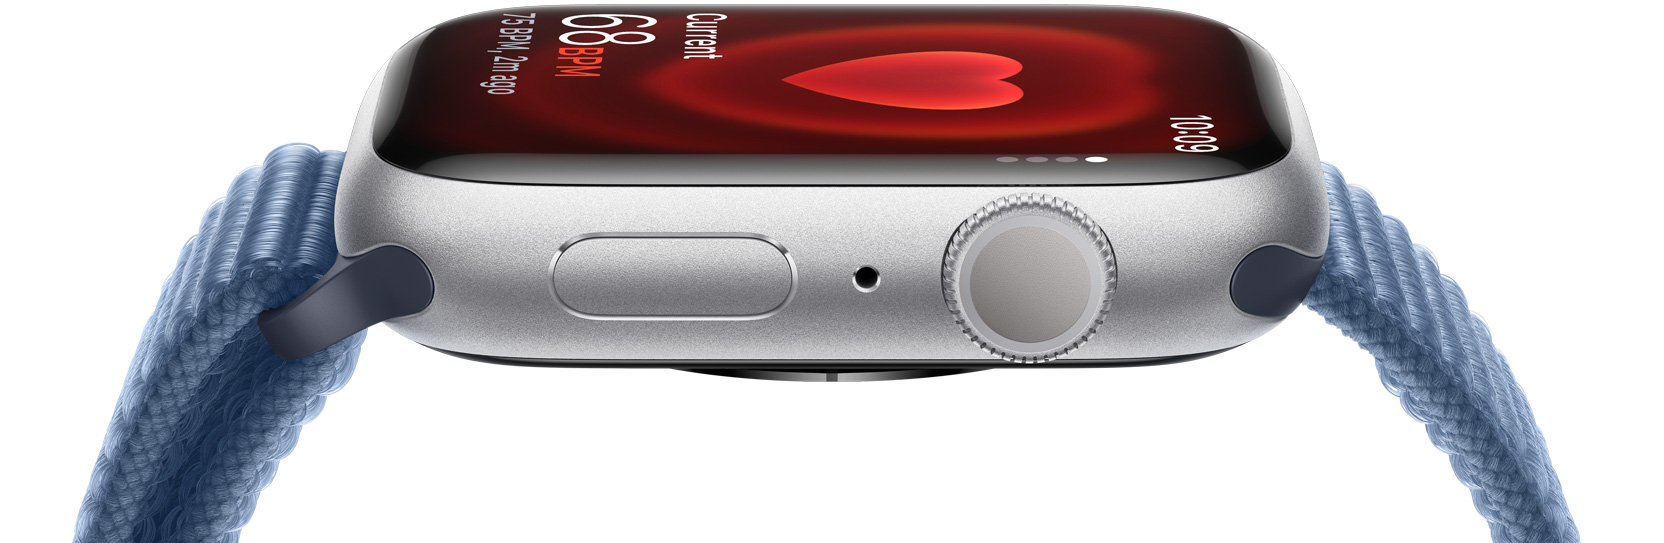 Bočni prikaz Apple Watcha koji prikazuje nečiji puls.